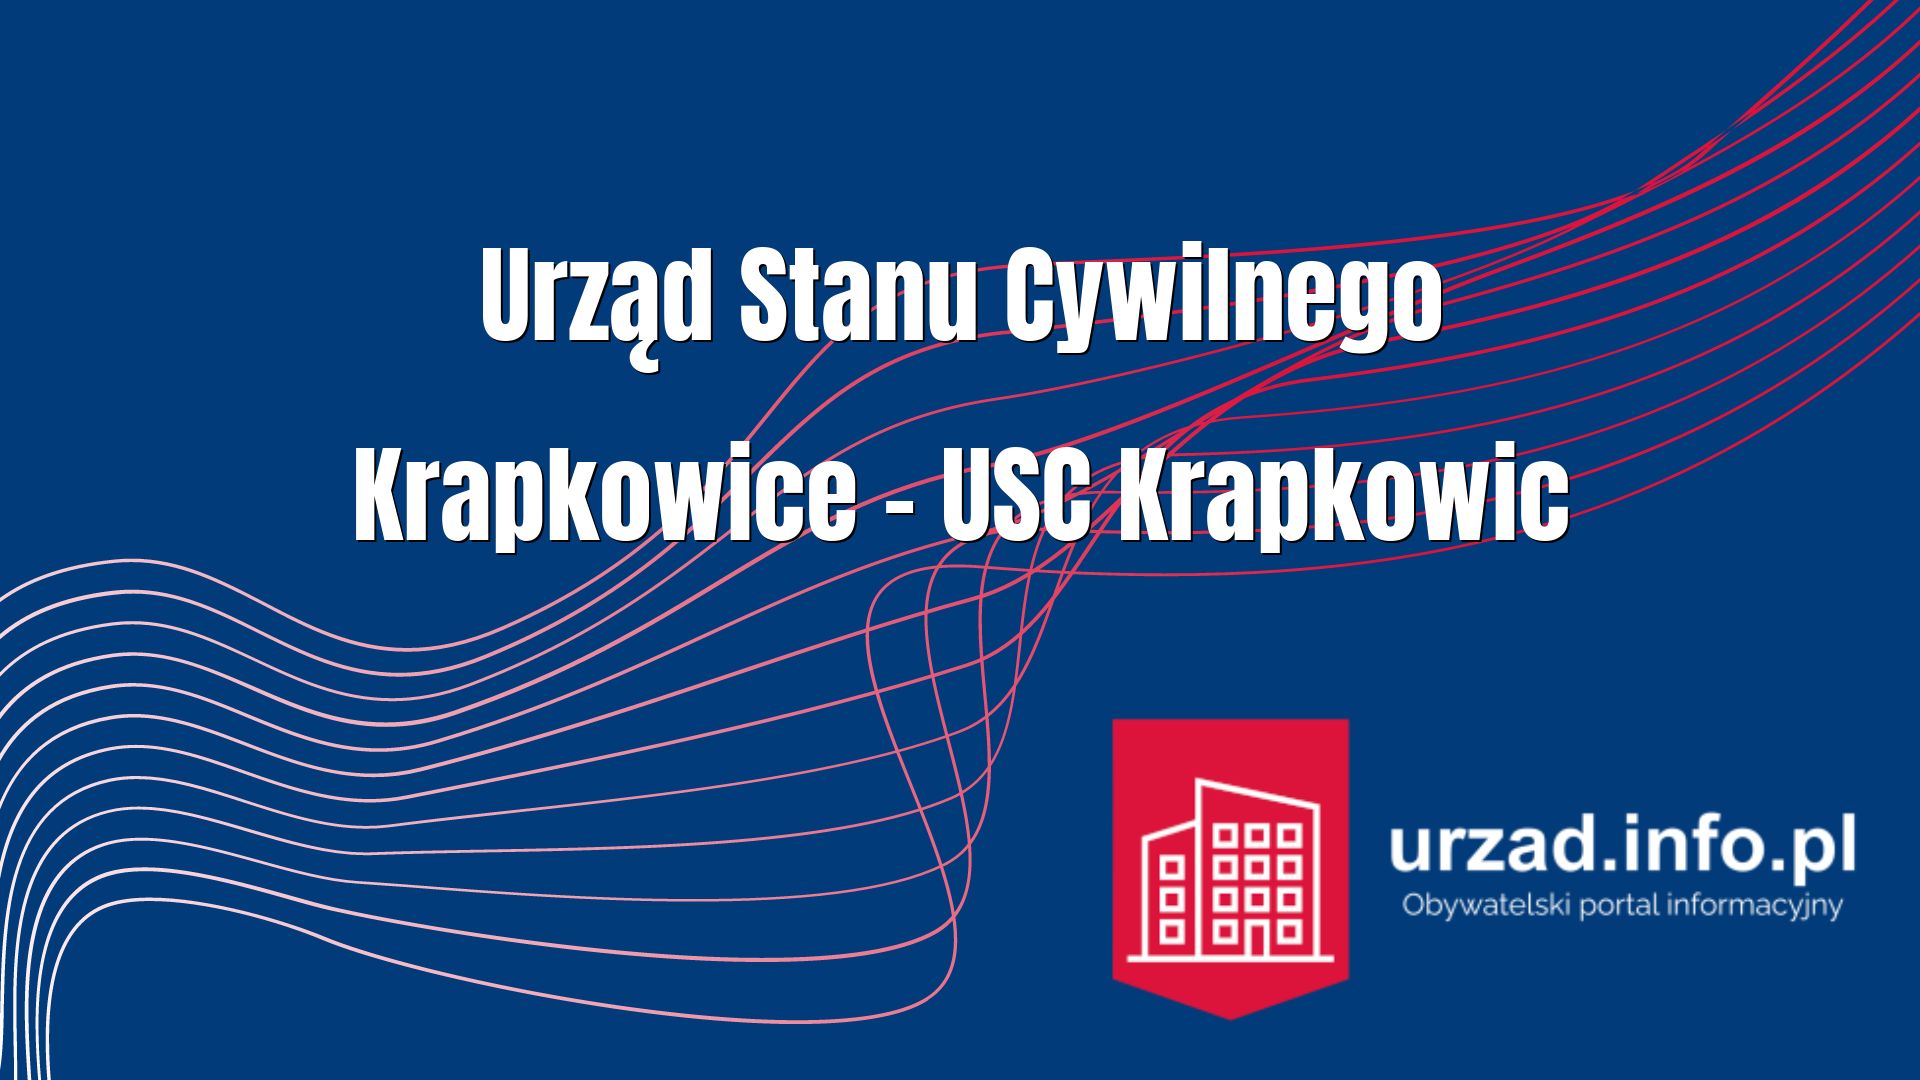 Urząd Stanu Cywilnego Krapkowice – USC Krapkowic